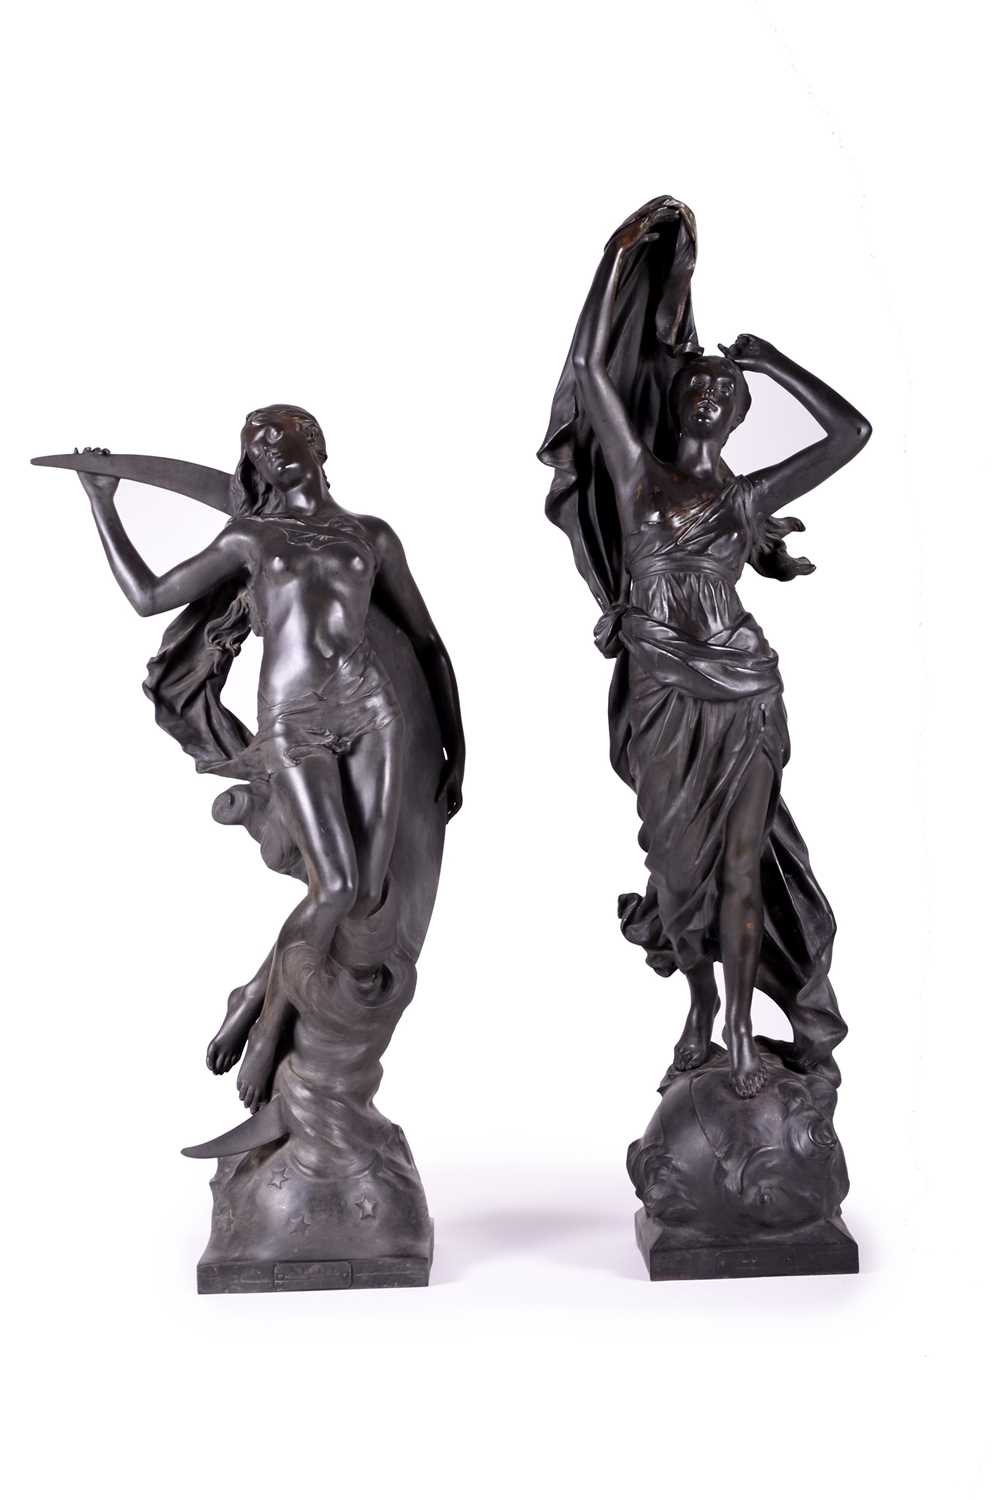 200 - After Eduard Drouot, 'La Nuit' and 'L'Aube', a pair of large bronze figures